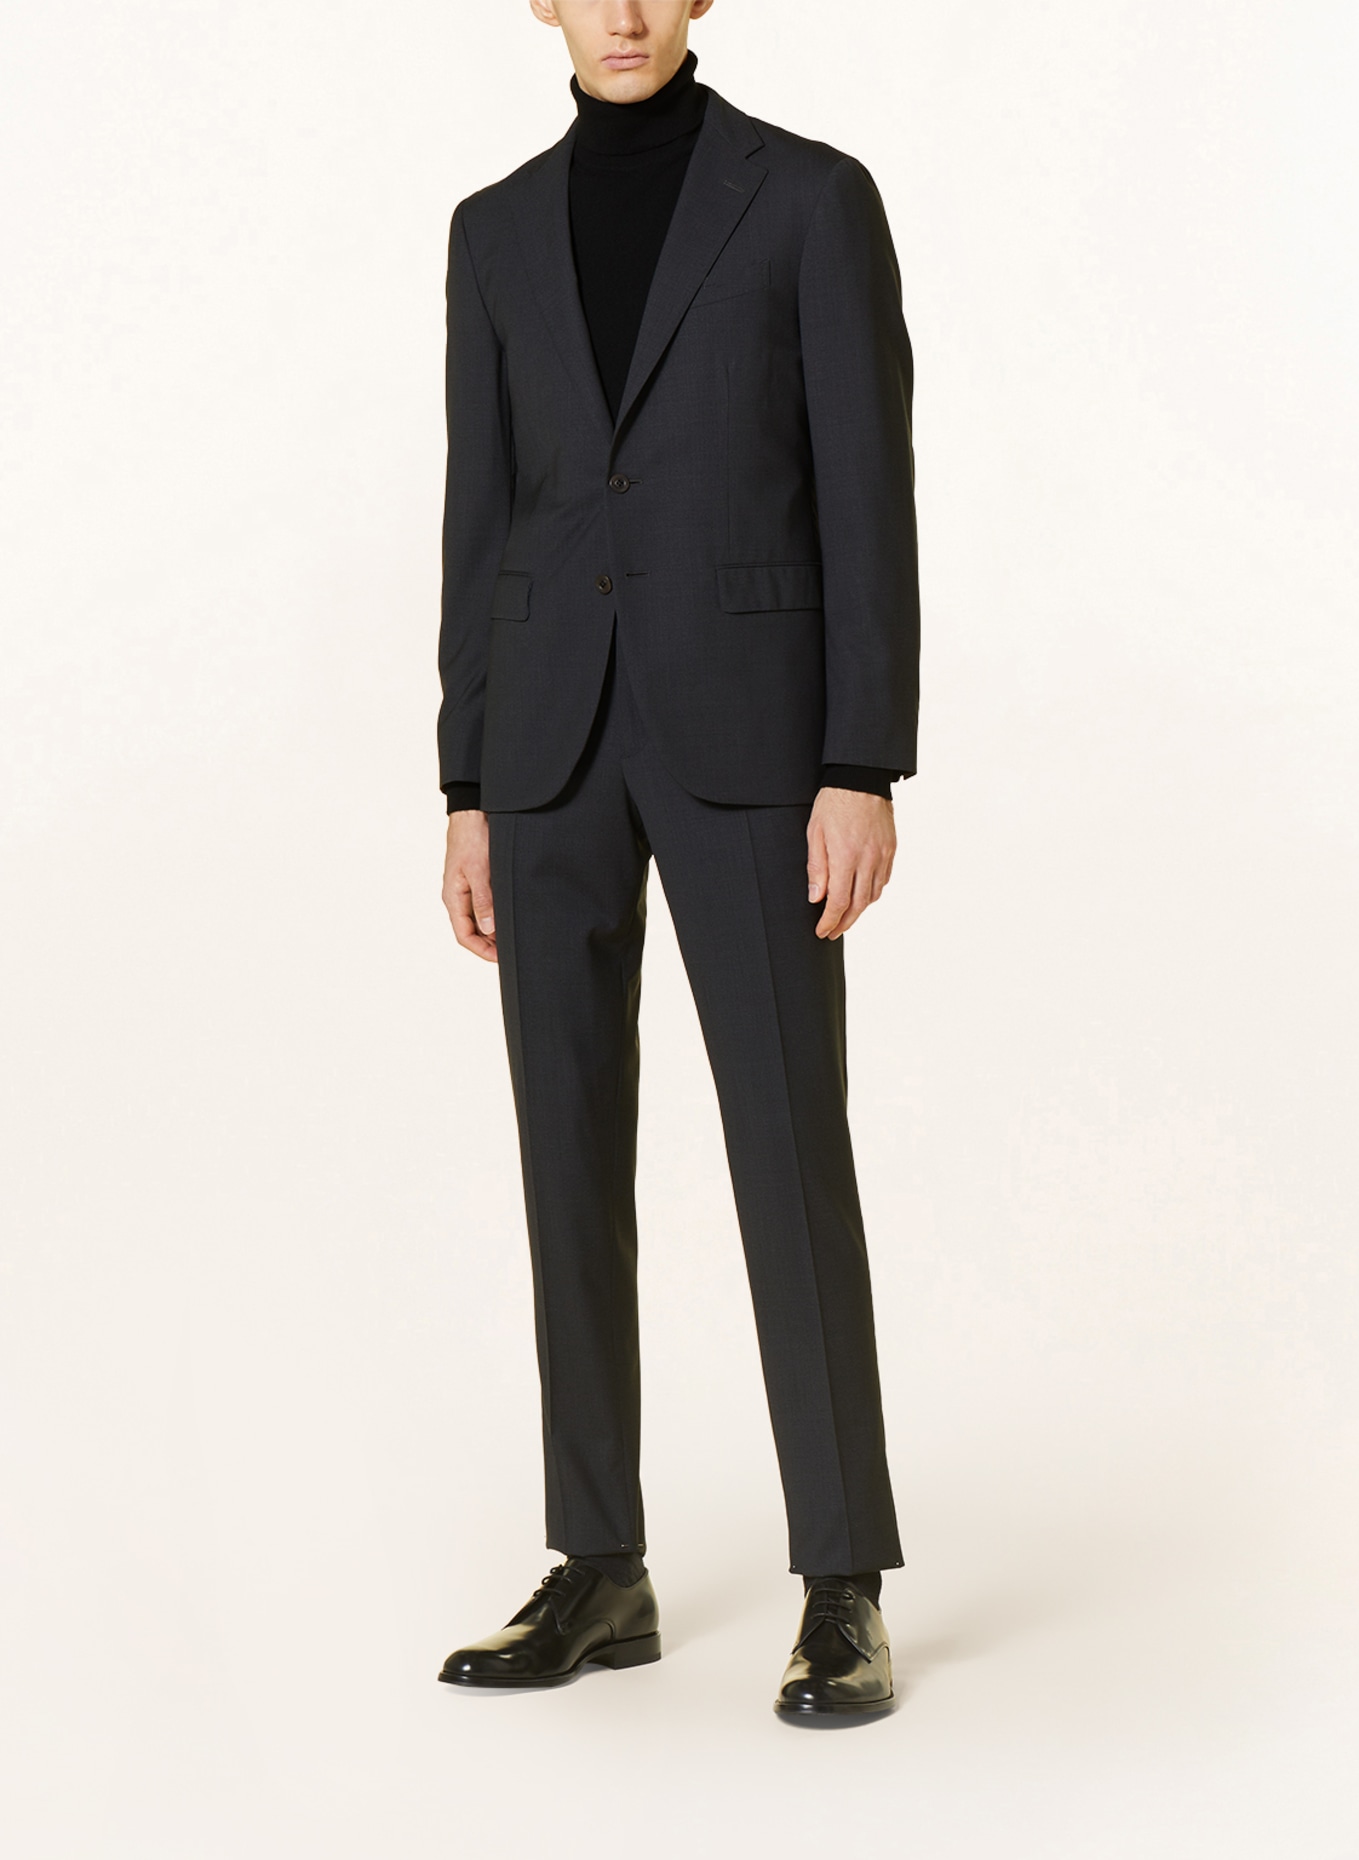 BOGLIOLI Suit jacket extra slim fit, Color: 890 Anthra (Image 2)